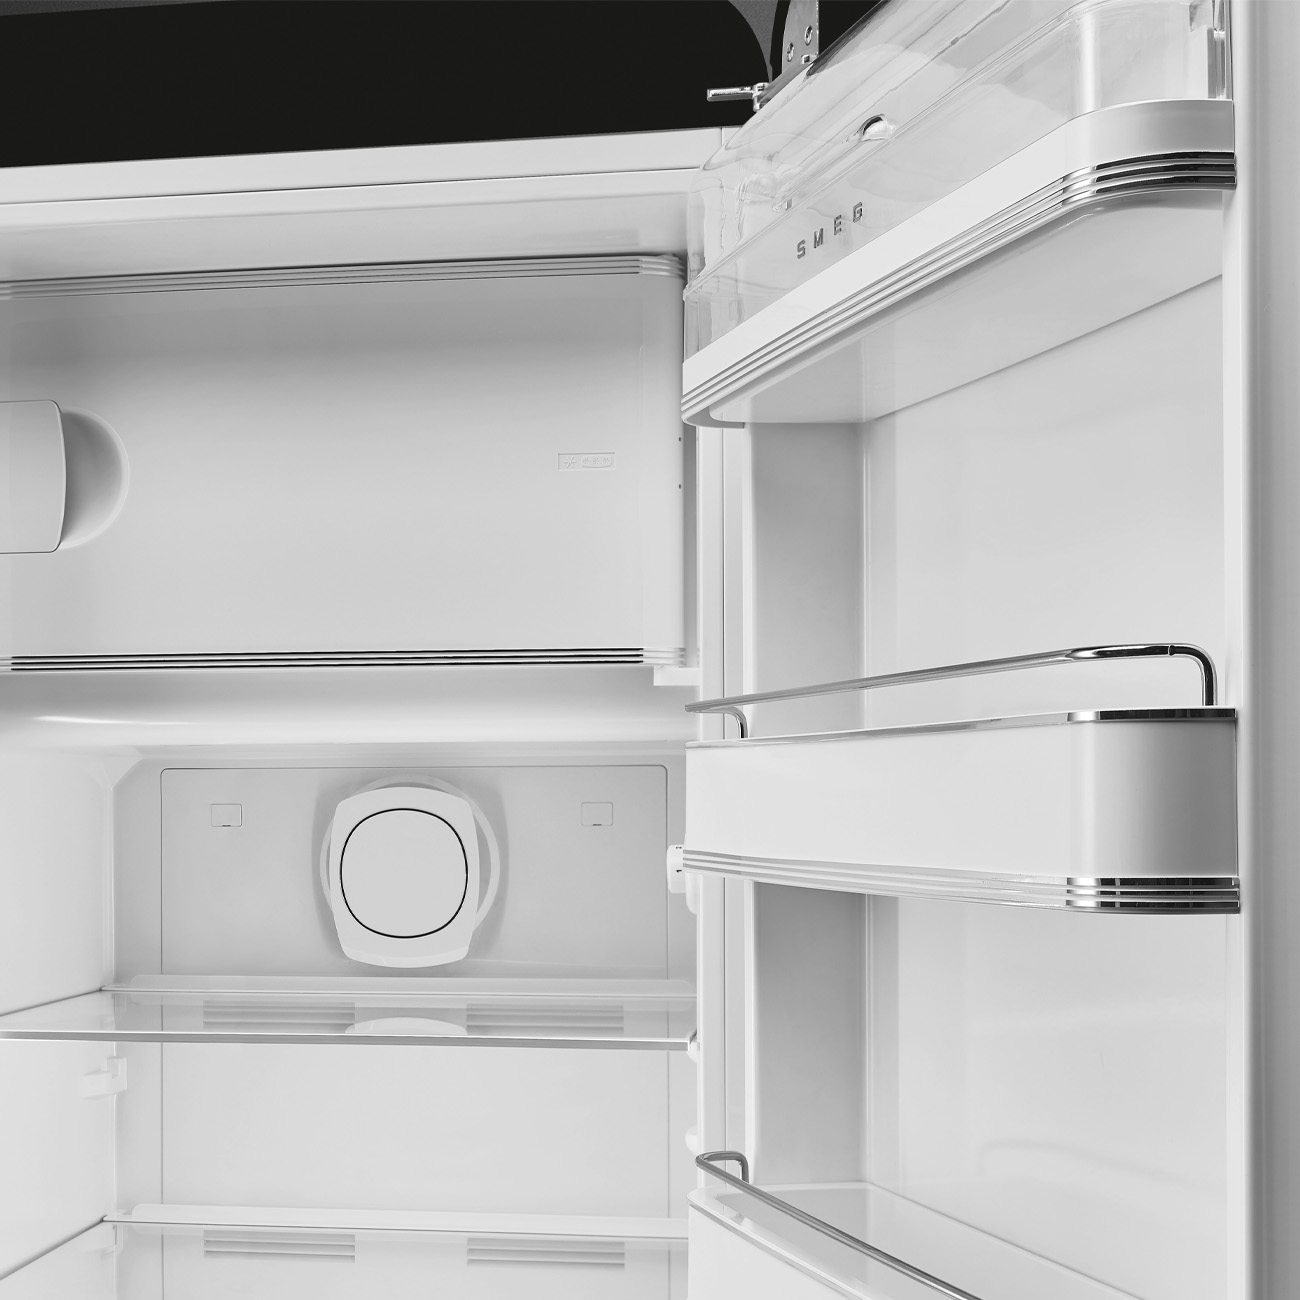 Schwarz Retro-Kühlschränke von Smeg_4